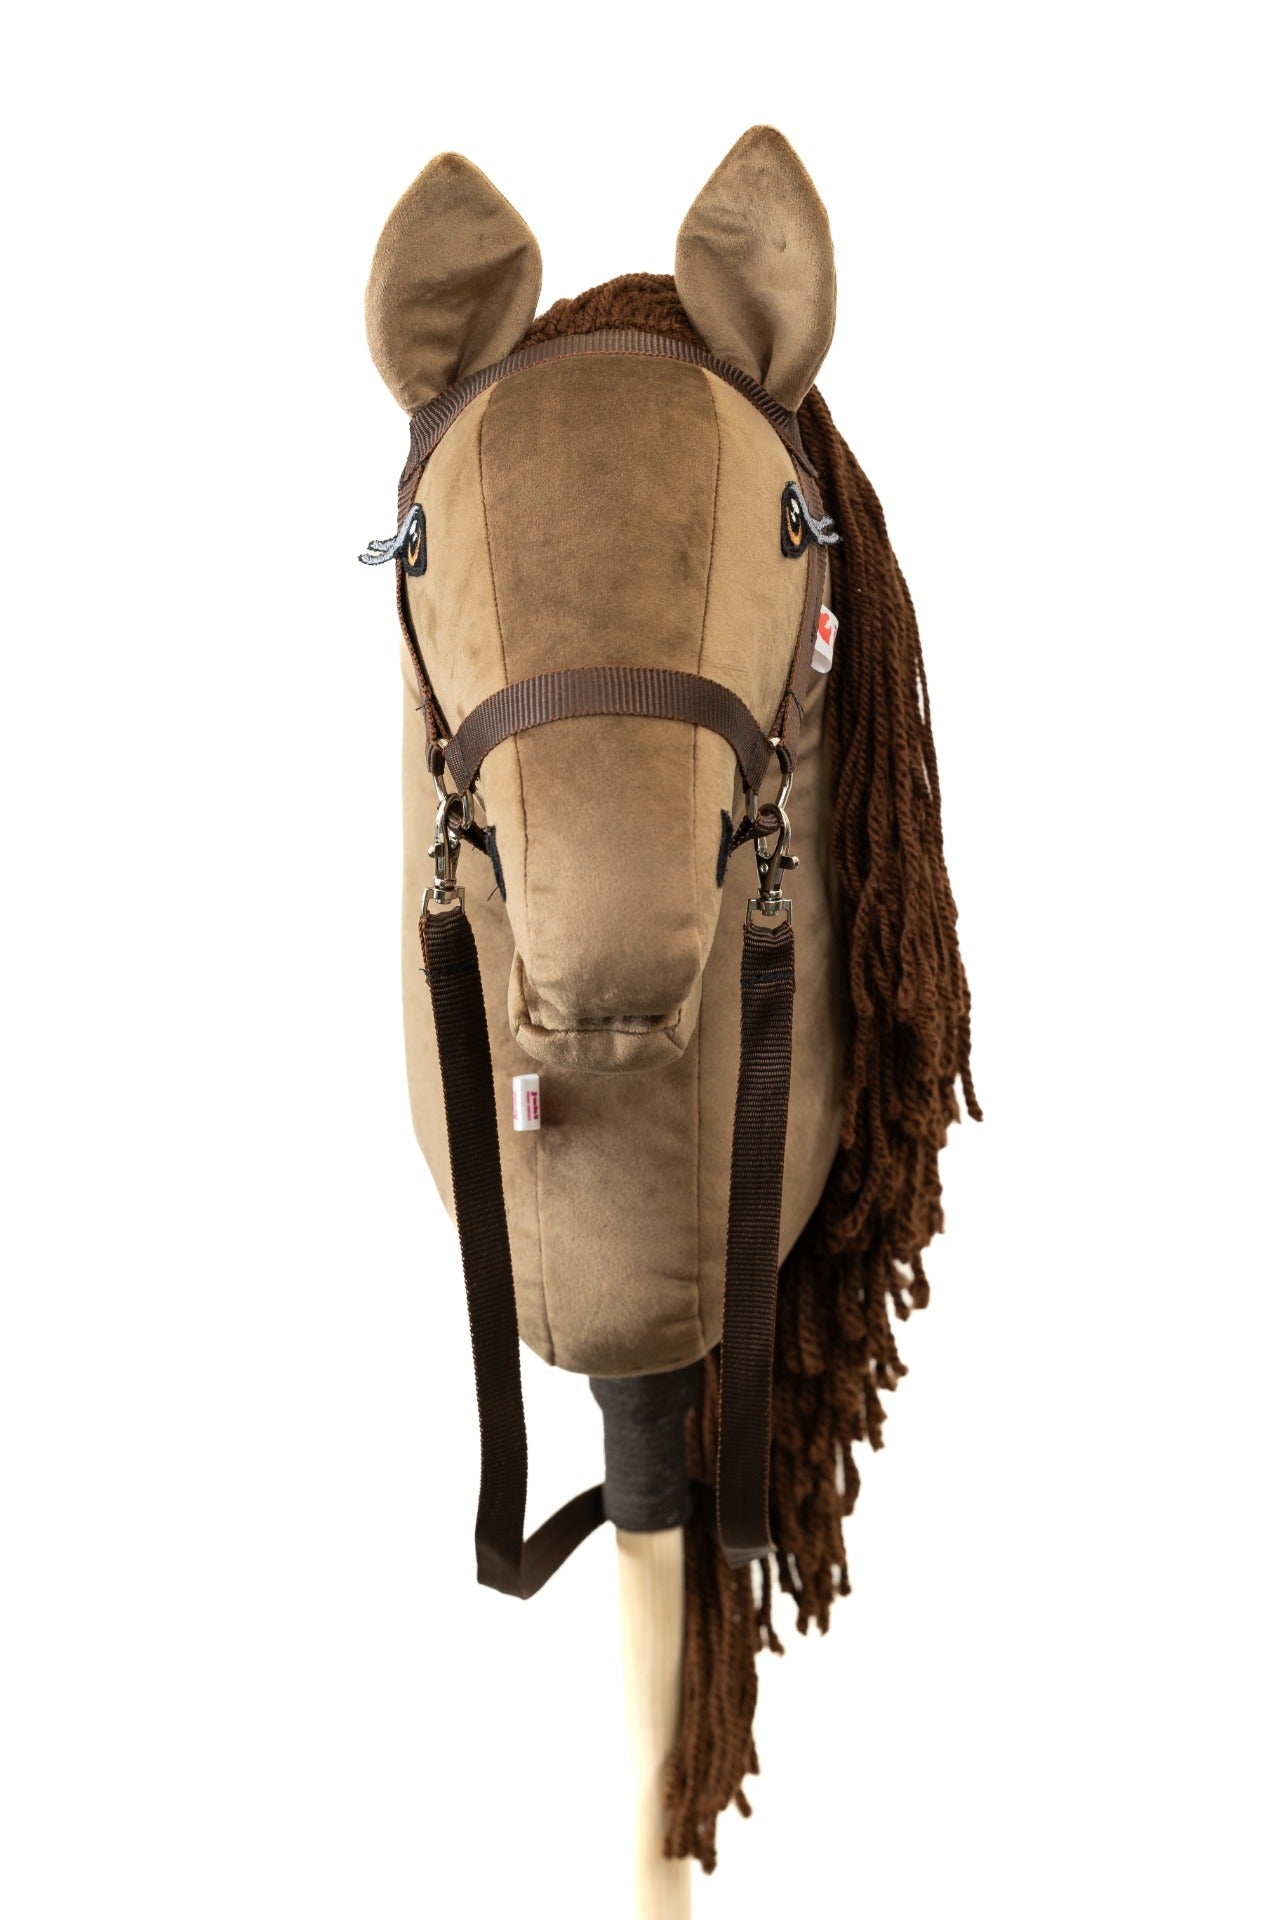 Chelsea - Brown mane - Adult horse